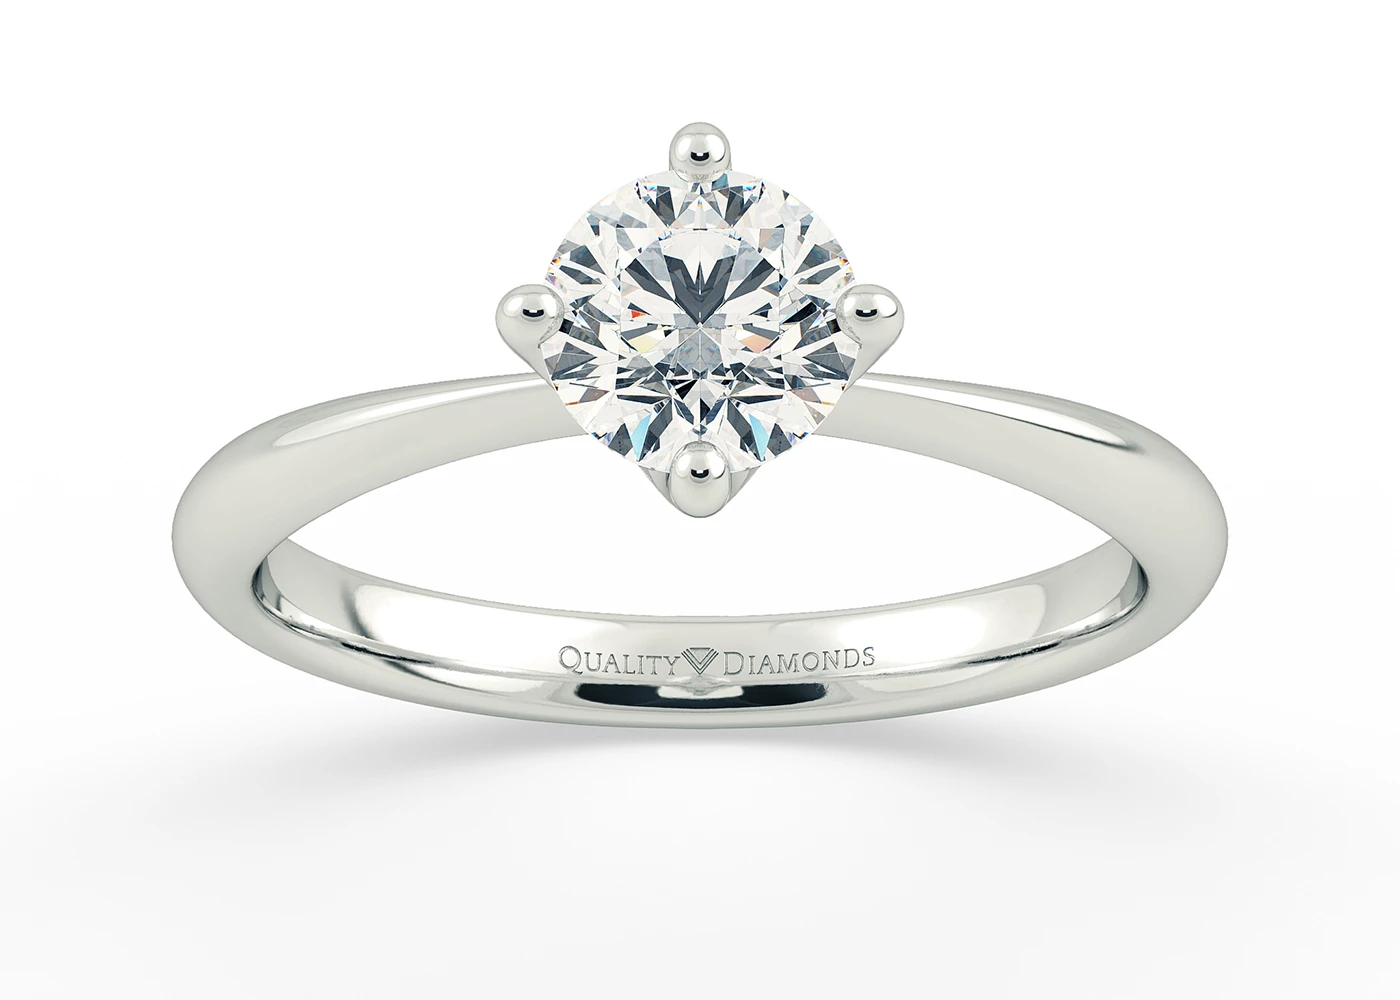 Compass Set Round Brilliant Amorette Diamond Ring in Platinum